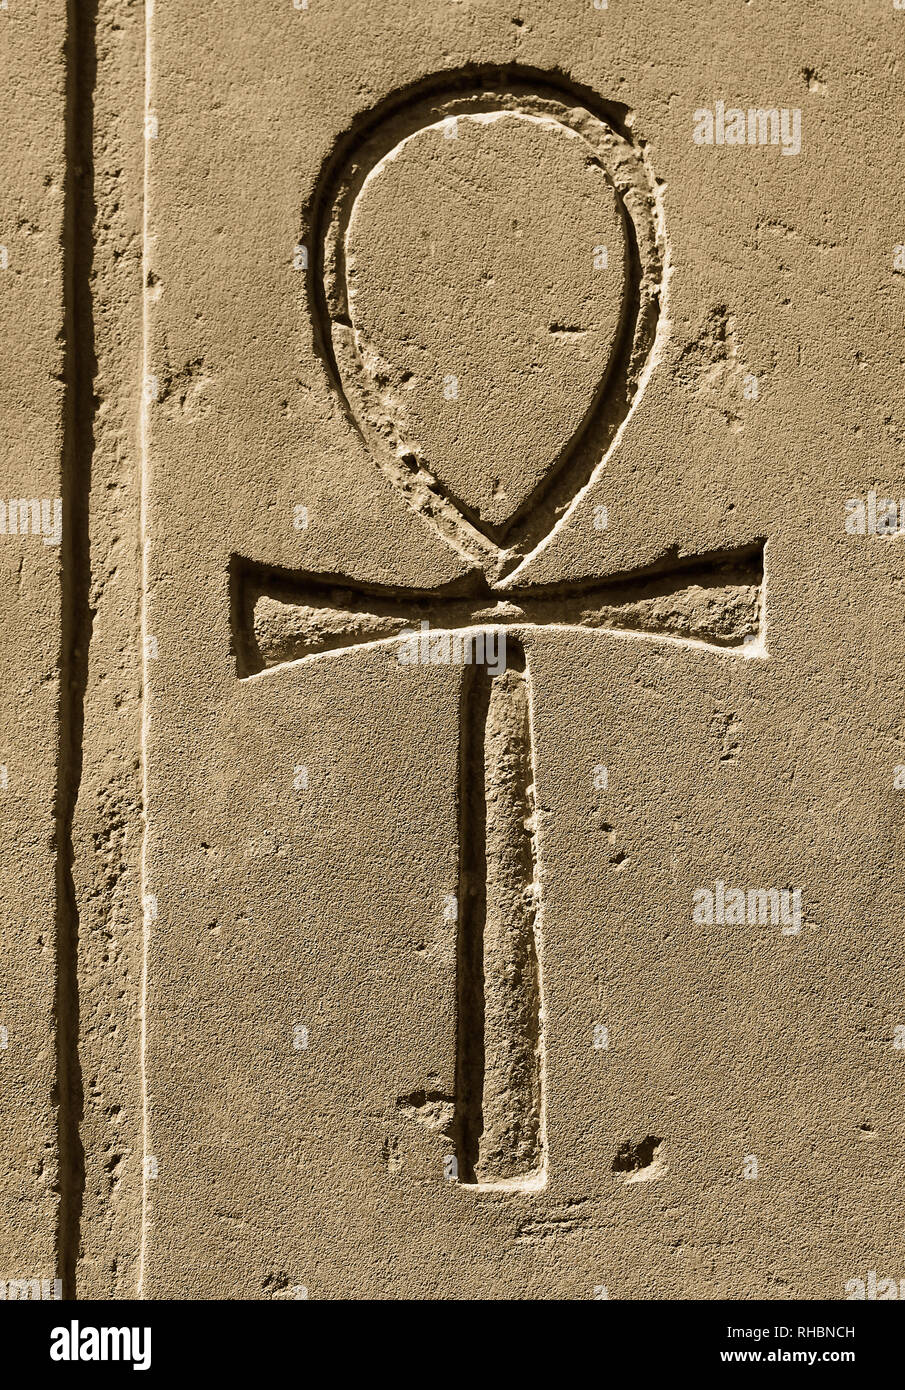 Antico Egitto simbolo Ankh ("chiave della vita", "vita eterna", "croce  egiziana") scolpiti sulla pietra nel tempio di Karnak e Luxor Foto stock -  Alamy